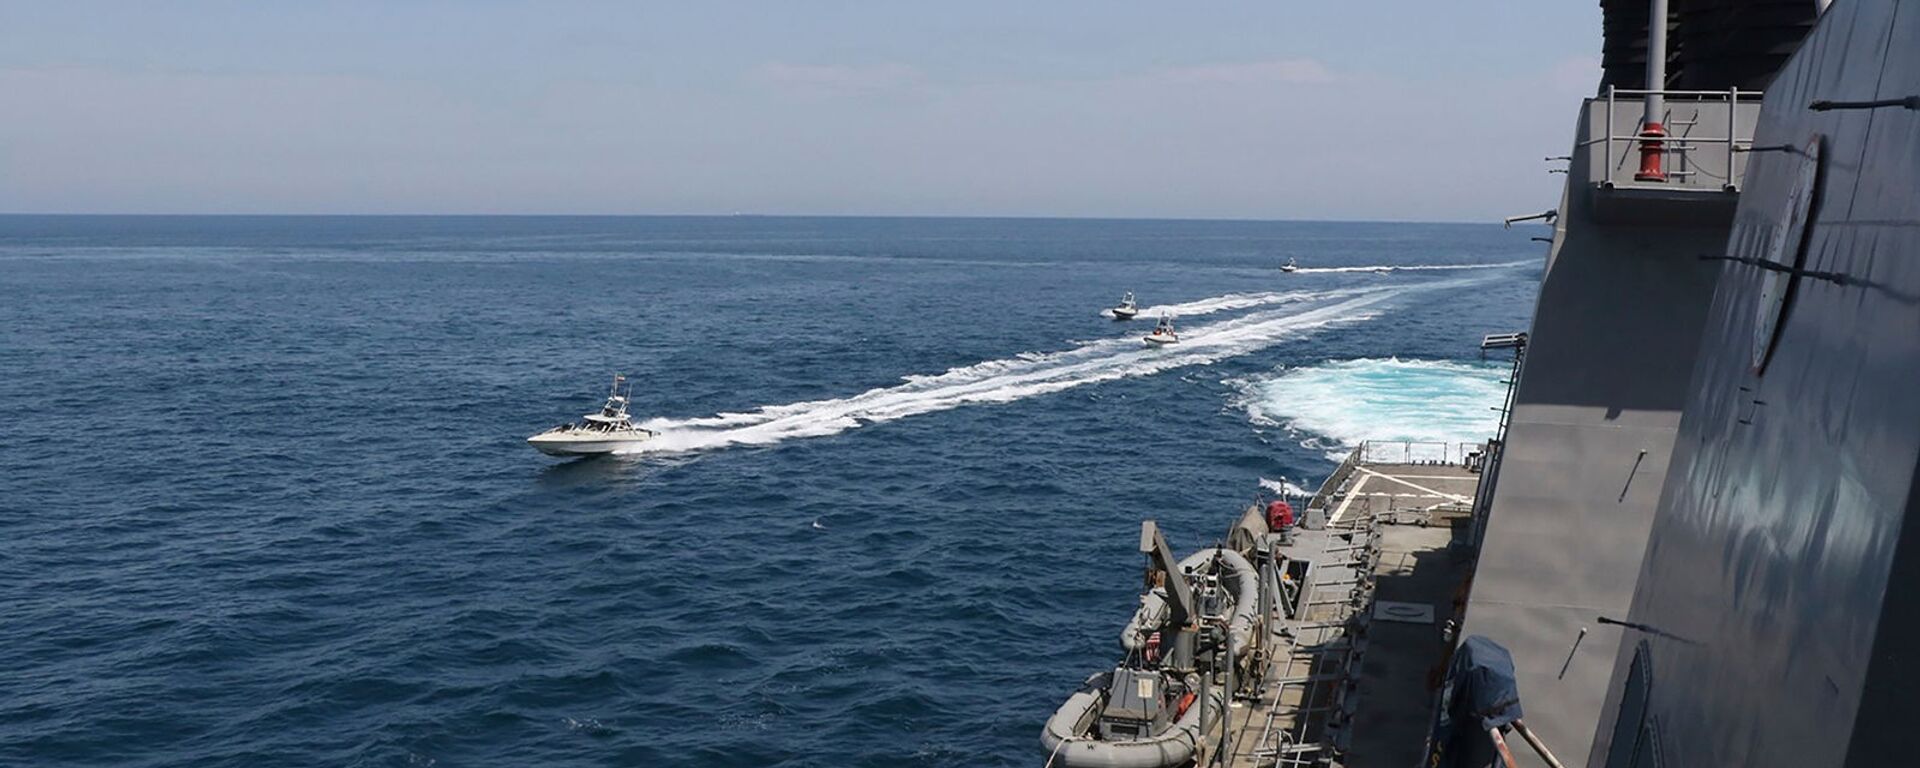 Иранские корабли Революционной гвардии плывут рядом с американскими военными кораблями в Персидском заливе близ Кувейта (15 апреля 2020). Персидский залив - Sputnik Армения, 1920, 02.02.2021